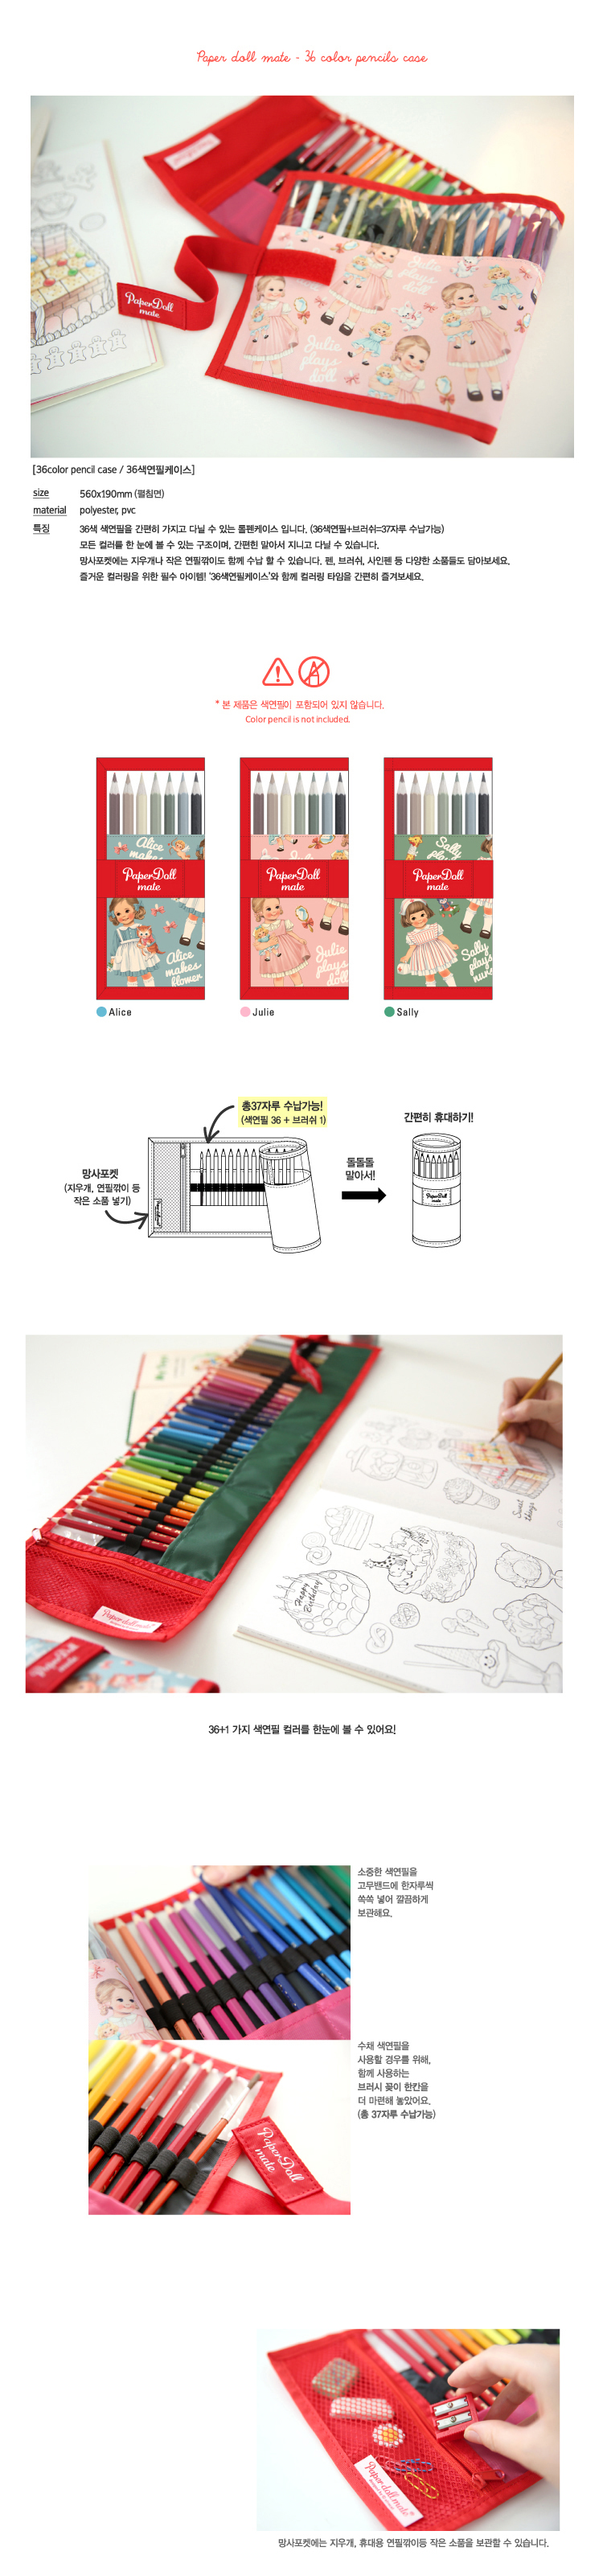 36color pencils case 21,000원 - 아프로캣 디자인문구, 필통, 패브릭필통, 롤 바보사랑 36color pencils case 21,000원 - 아프로캣 디자인문구, 필통, 패브릭필통, 롤 바보사랑